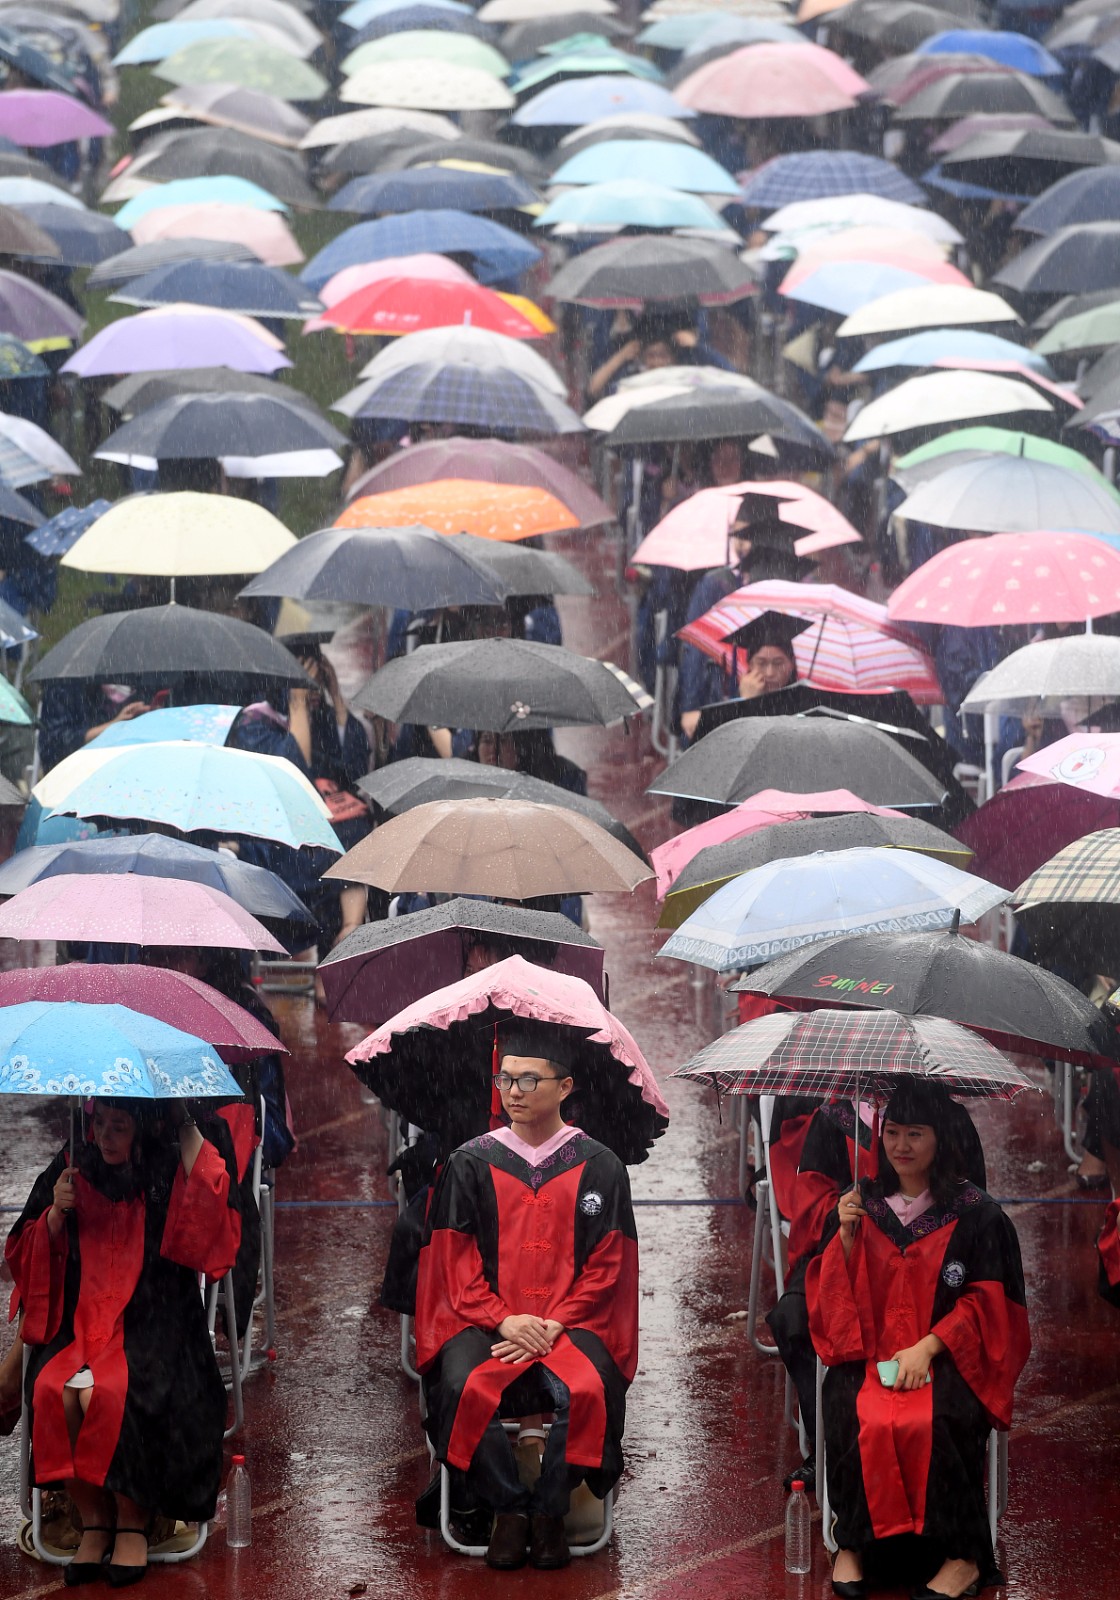 感动!武汉大学万余名学生冒雨参加毕业典礼